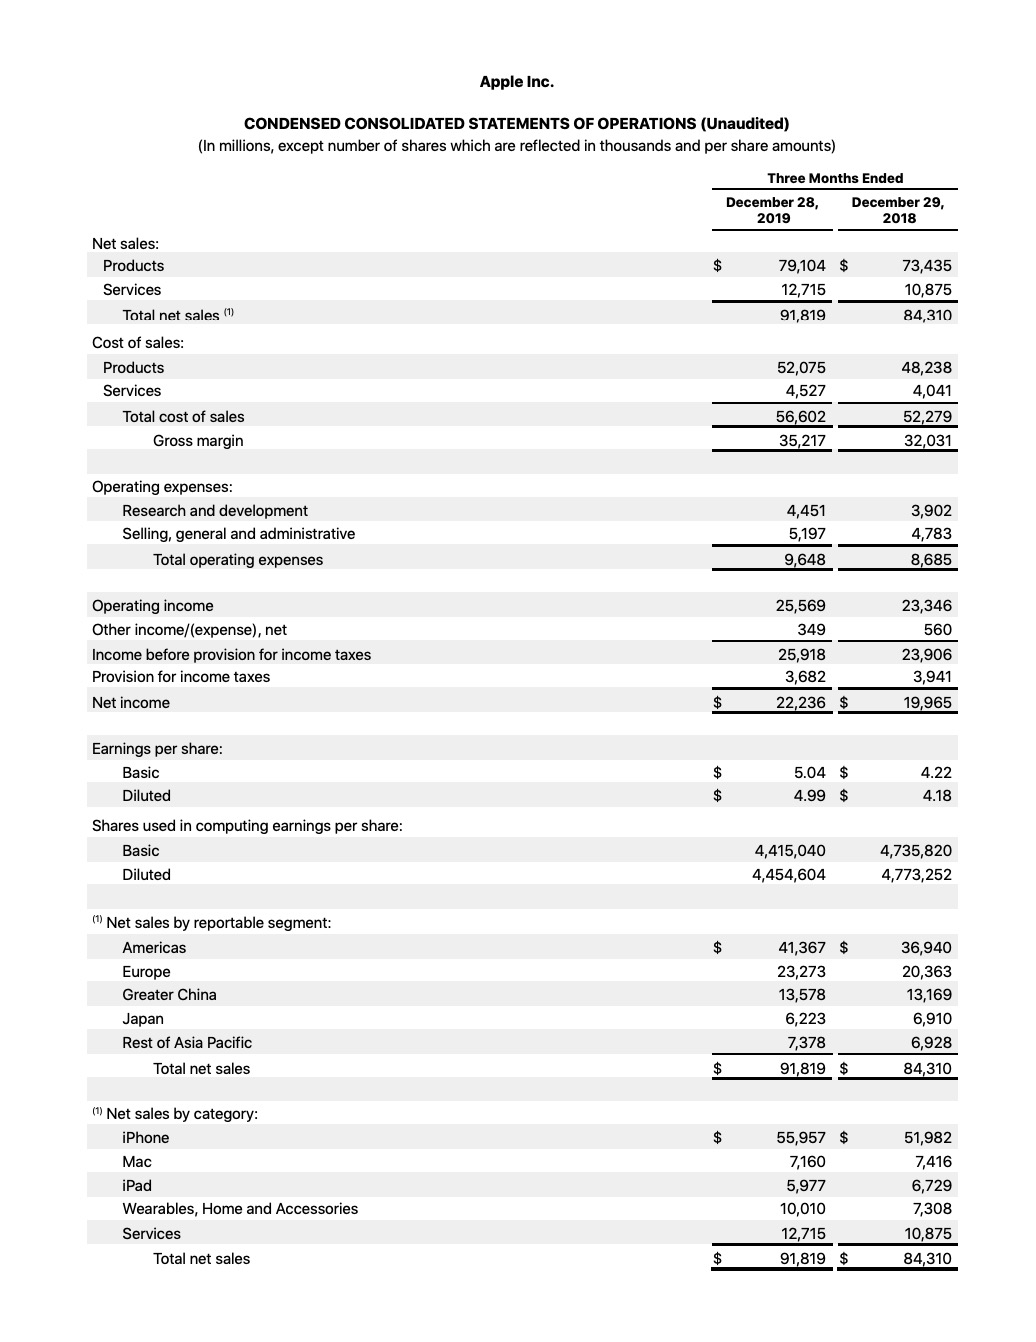 Apple Reports Q1 FY20 Earnings: $91.8 Billion in Revenue, $22.2 Billion in Net Income [Chart]